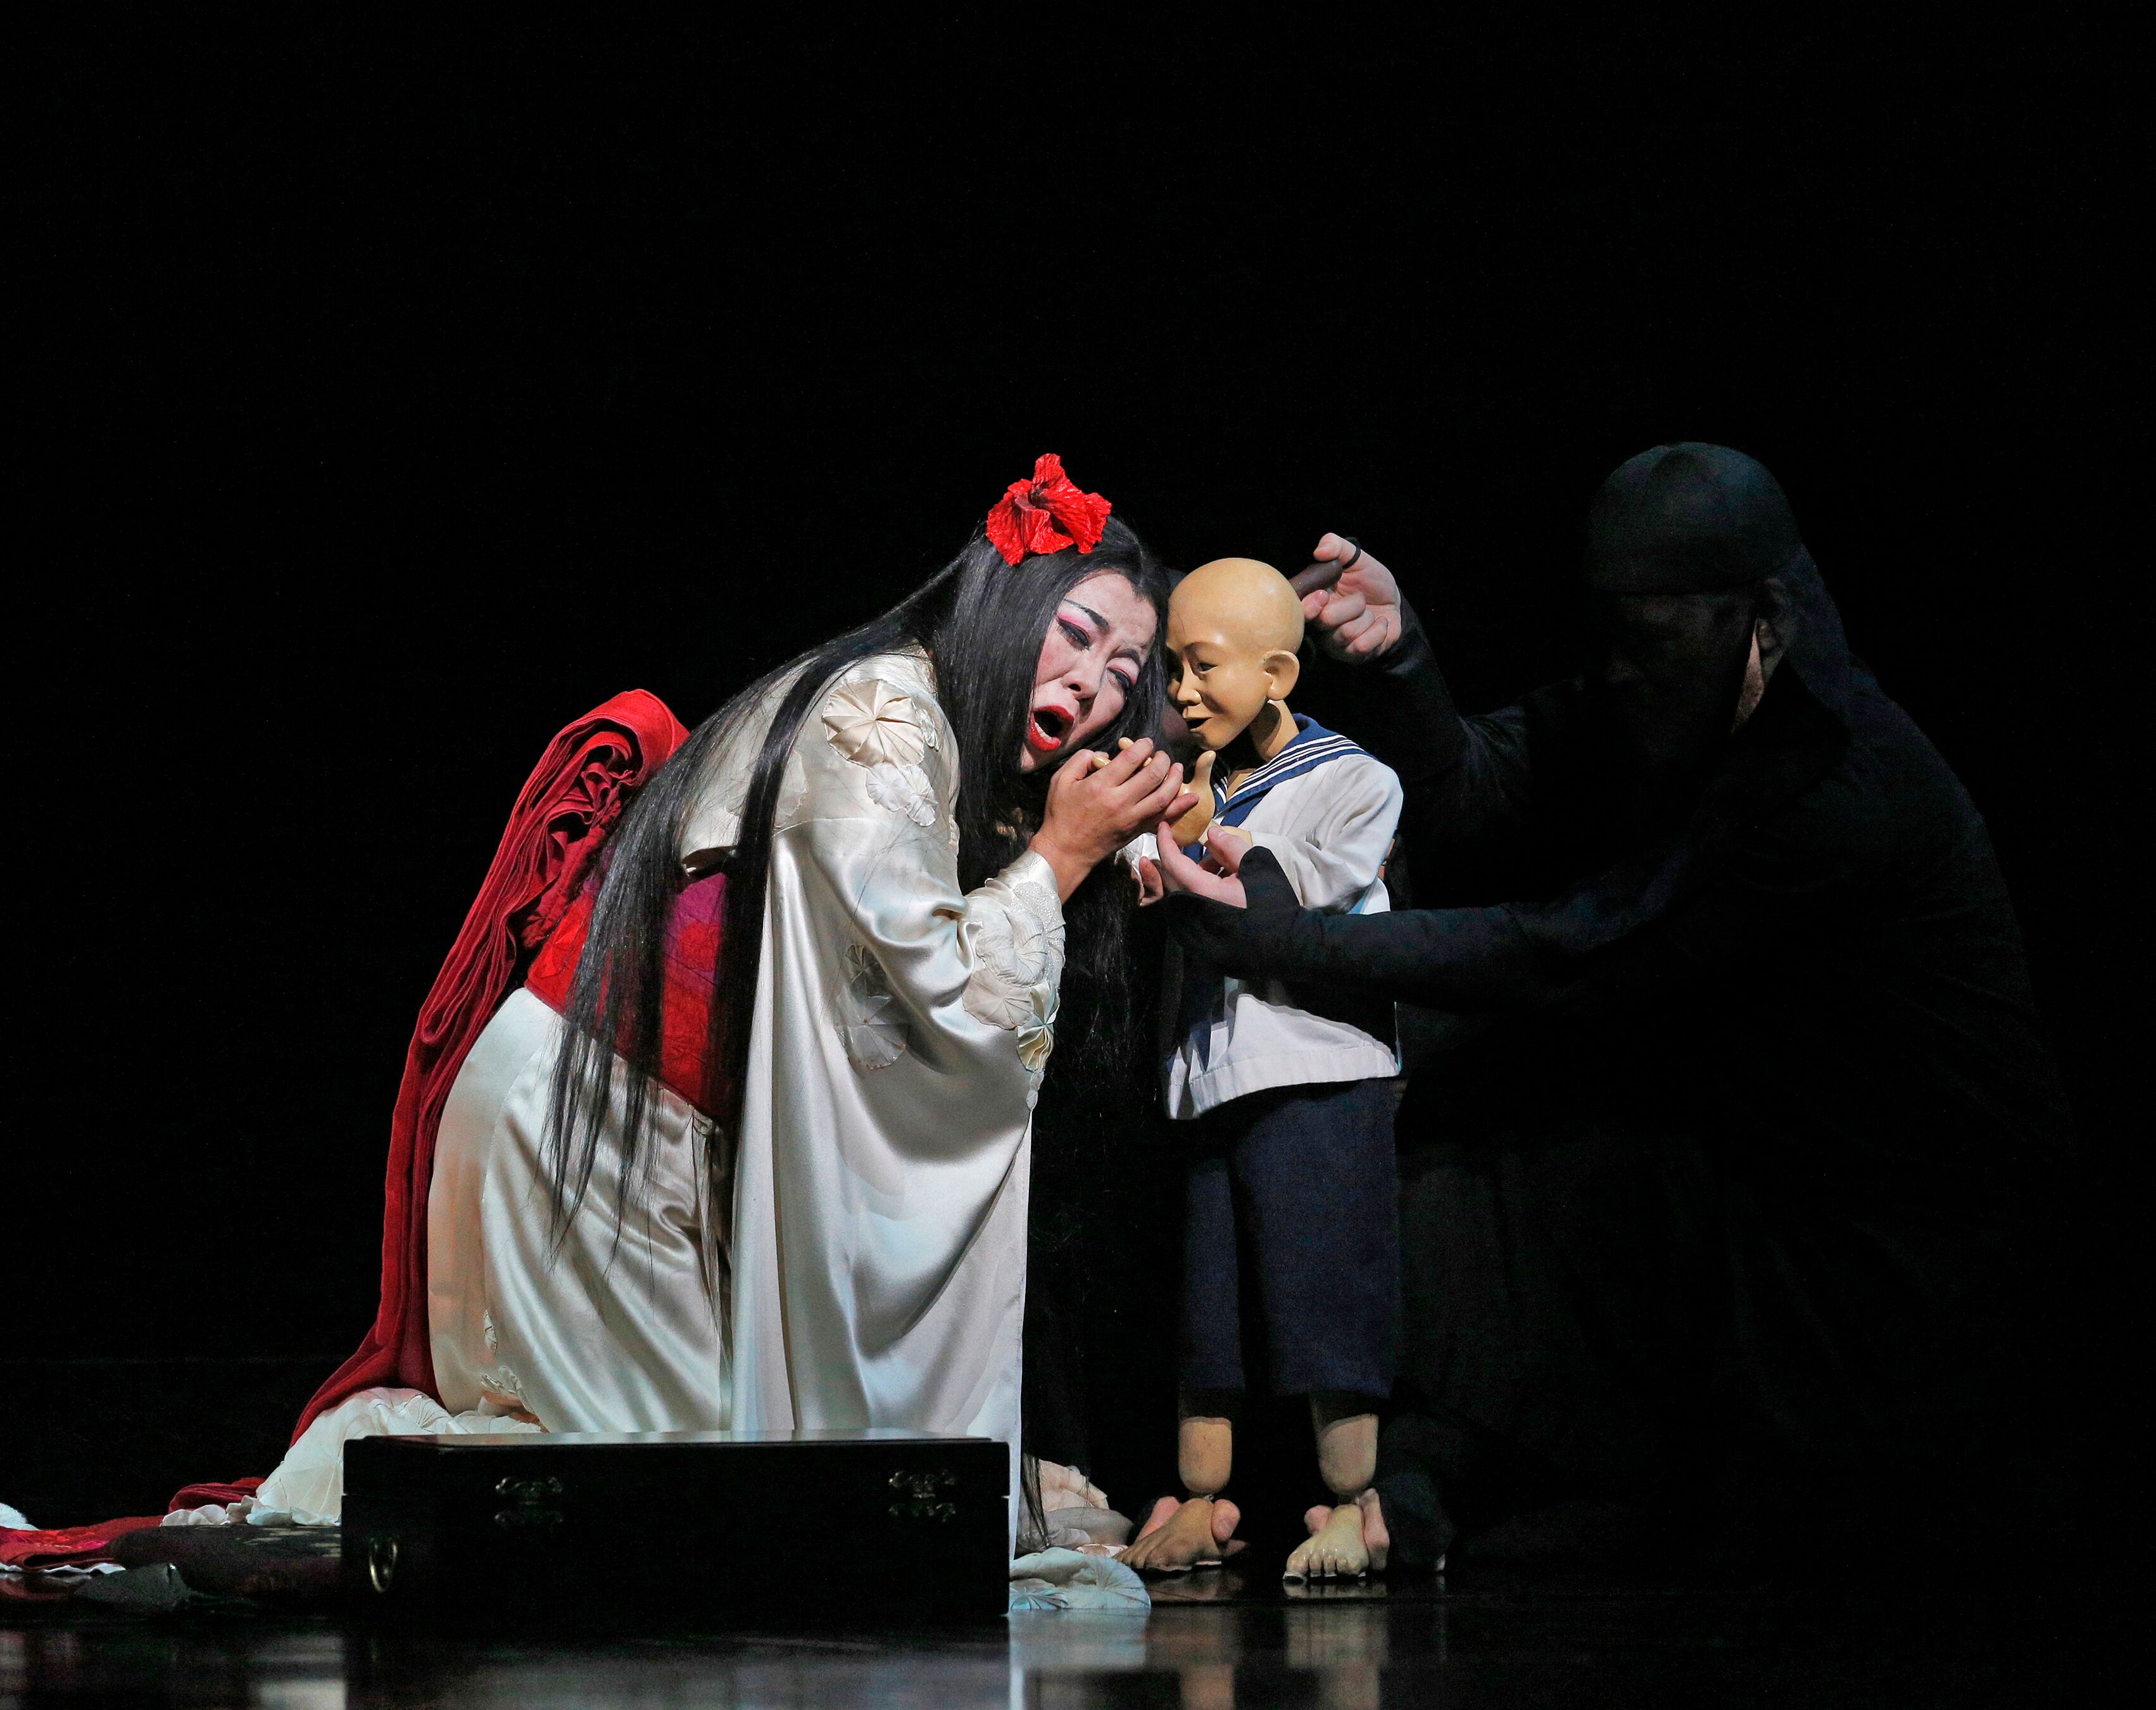 Yelmo Cines proyecta 'Madama Butterfly' en directo y en exclusiva desde el Metropolitan Opera de Nueva York